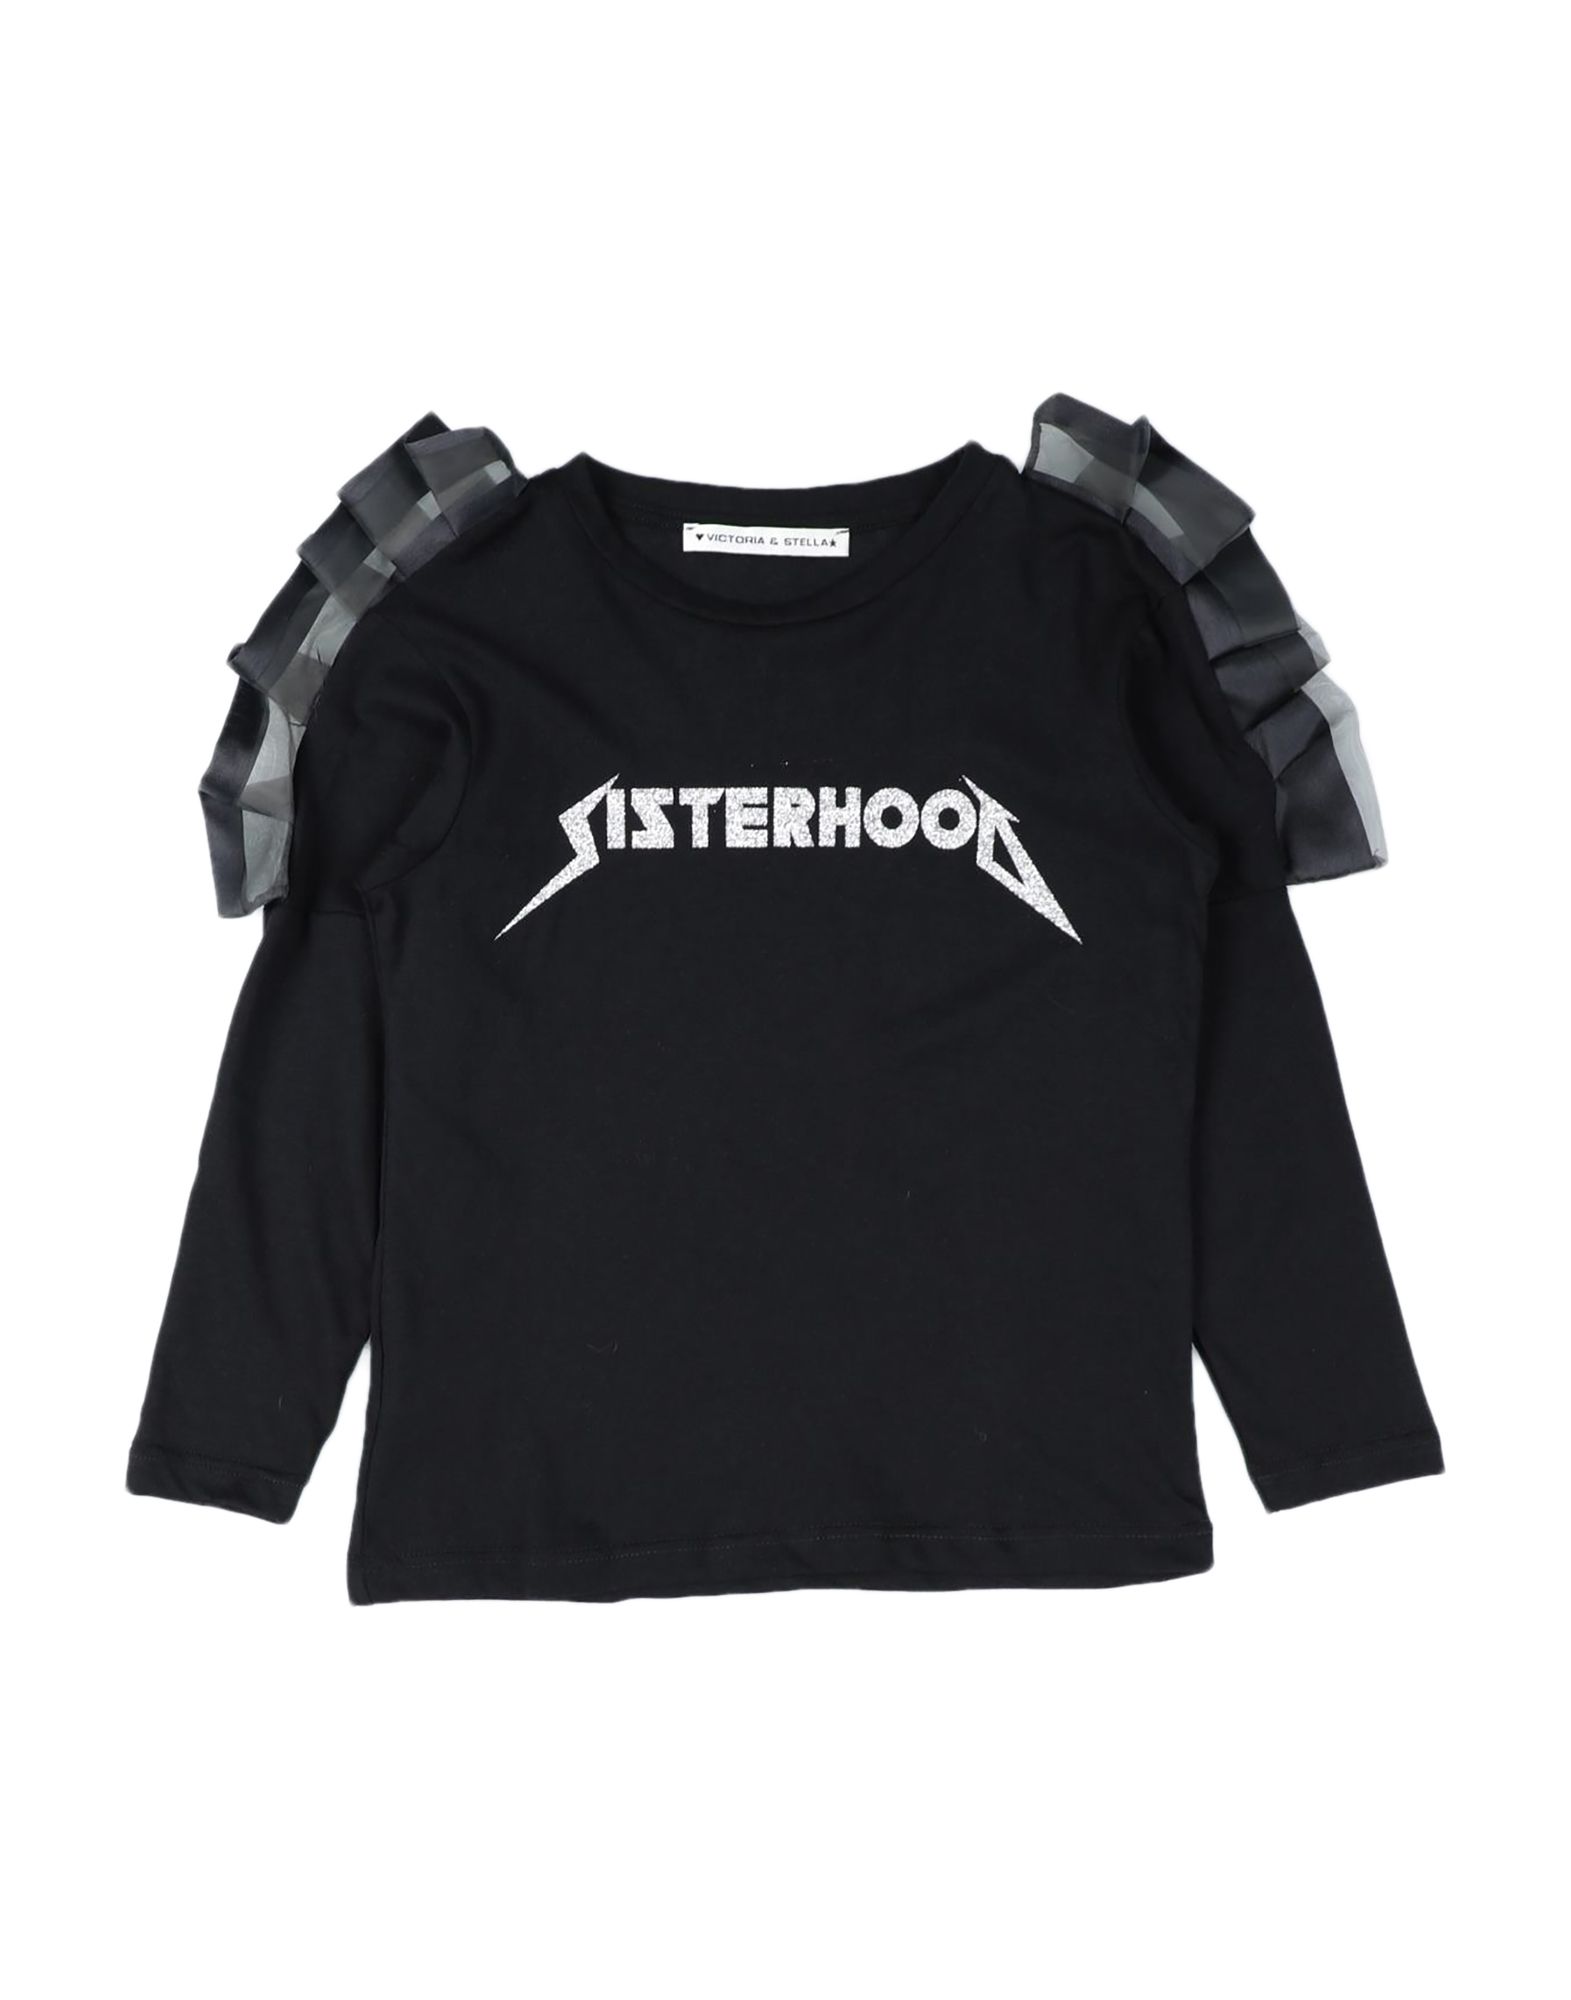 Victoria & Stella Kids' T-shirts In Black